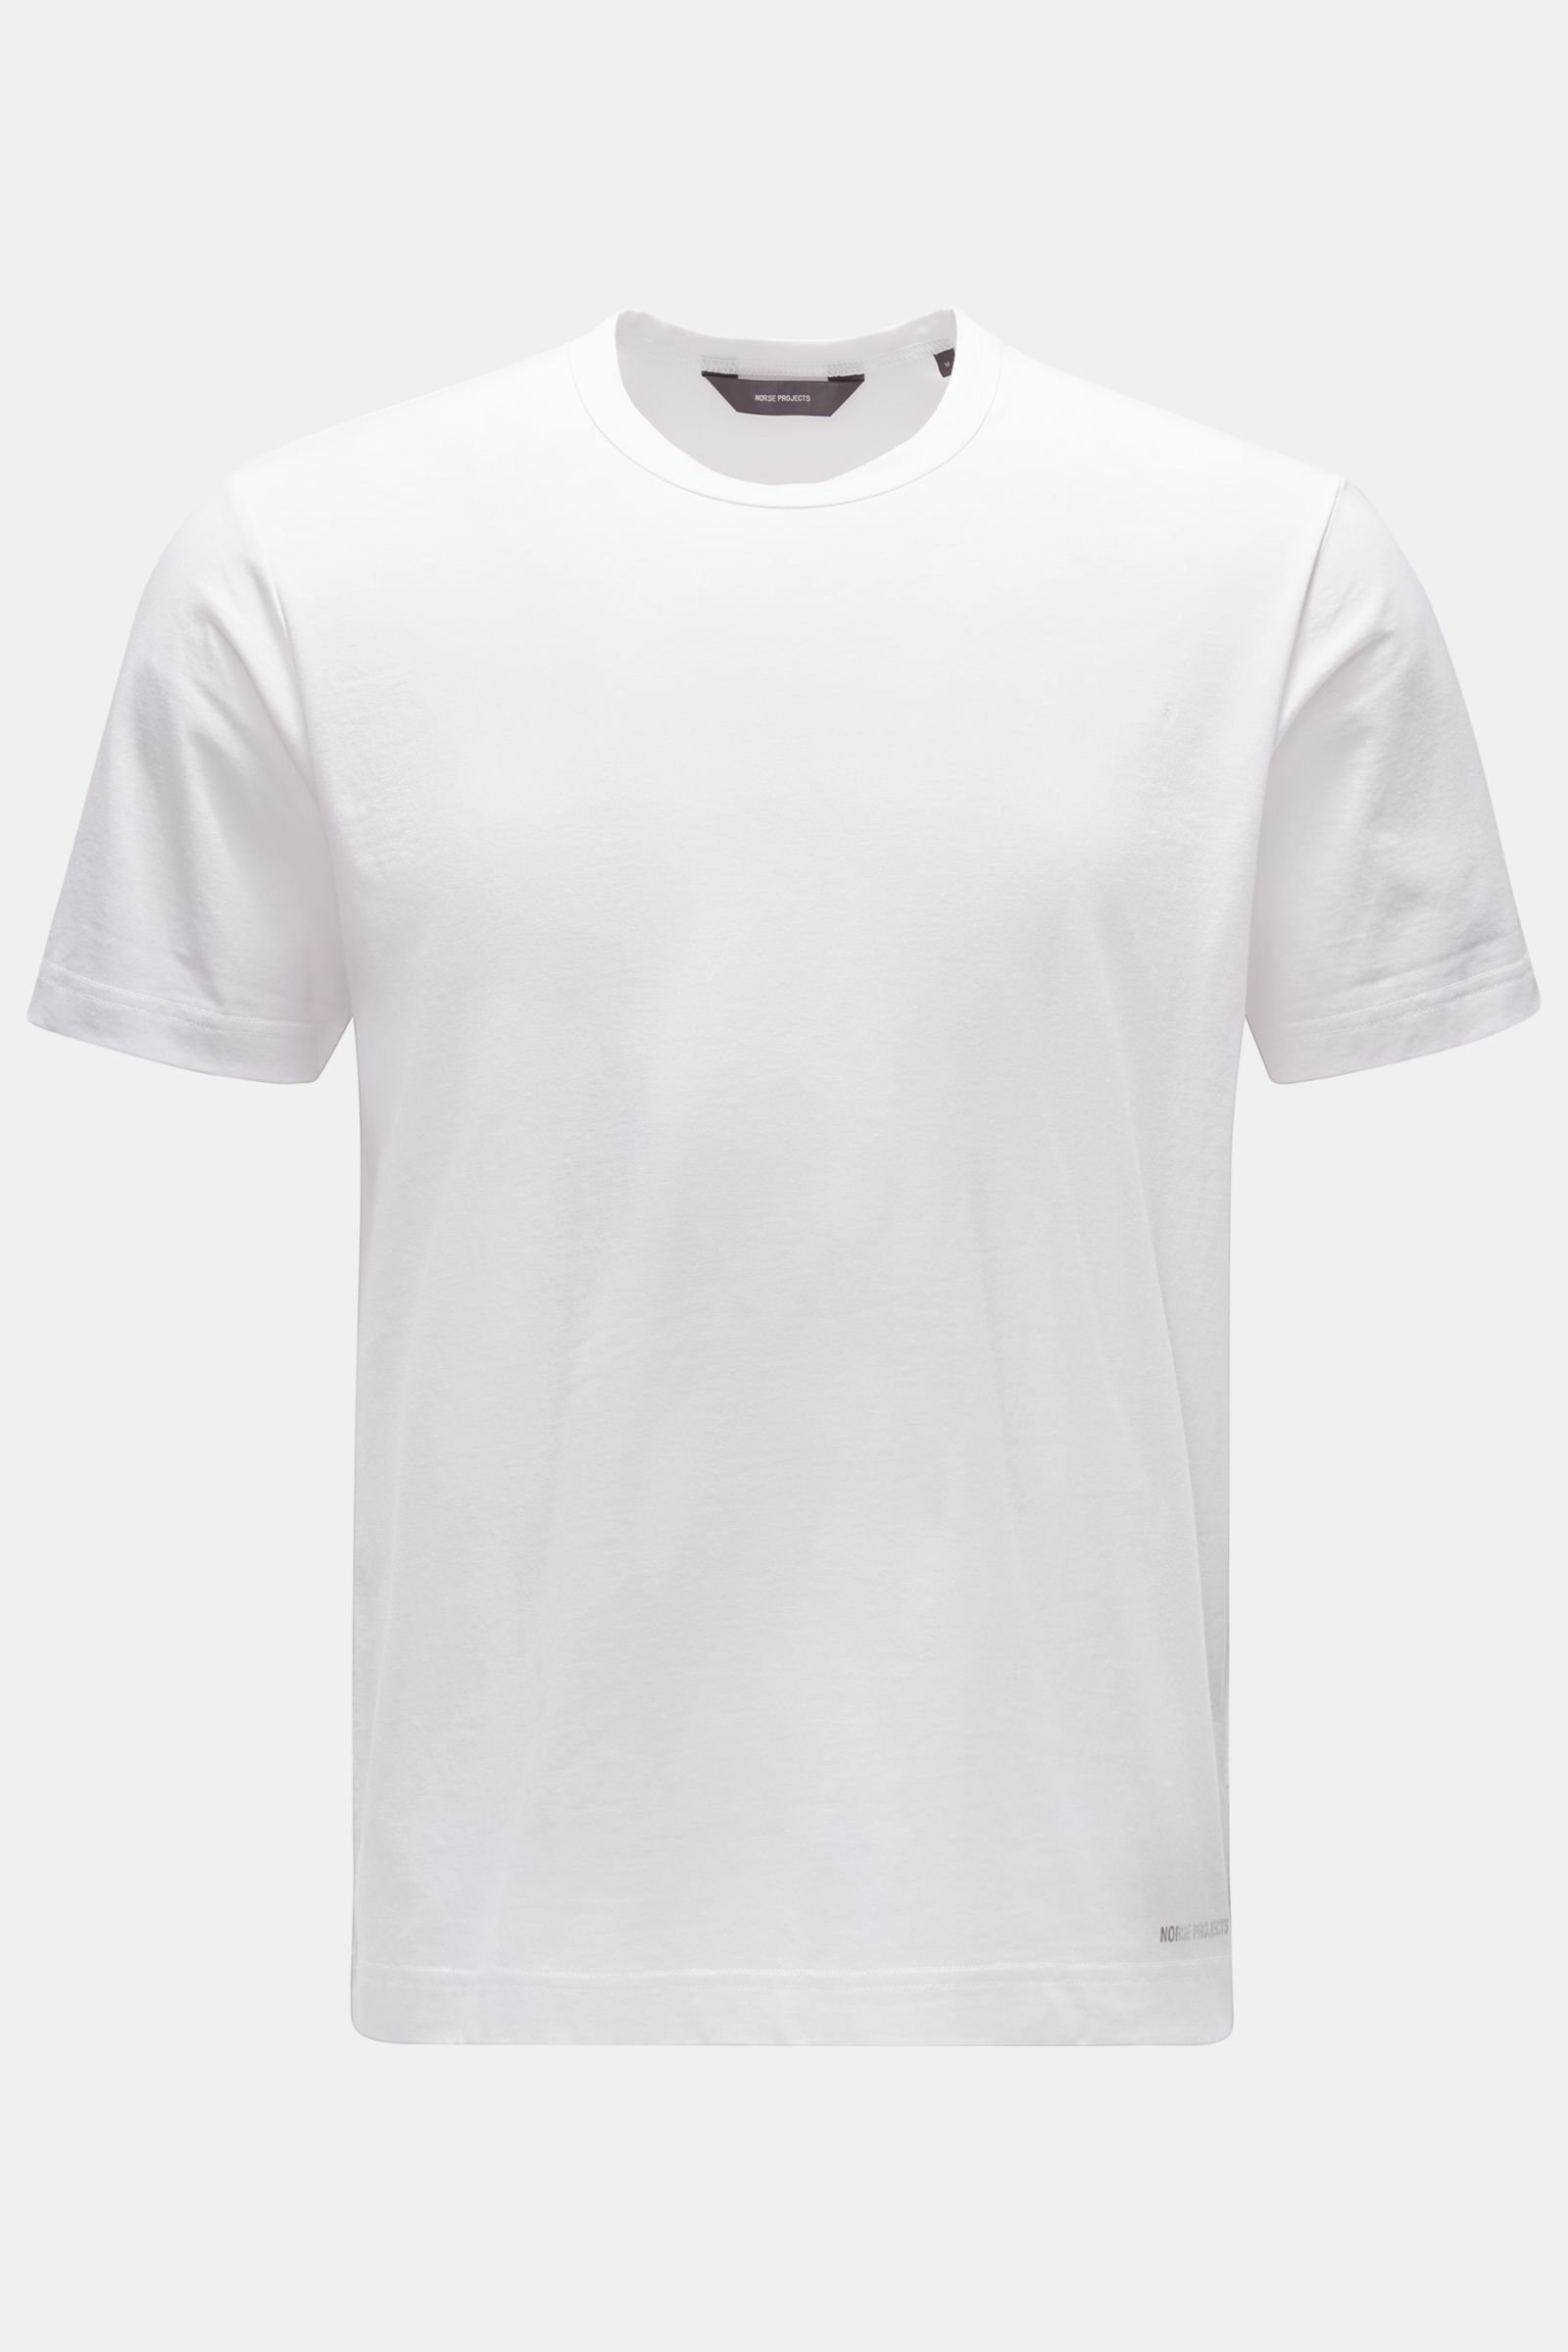 Rundhals-T-Shirt 'Joakim Tech Standard' weiß